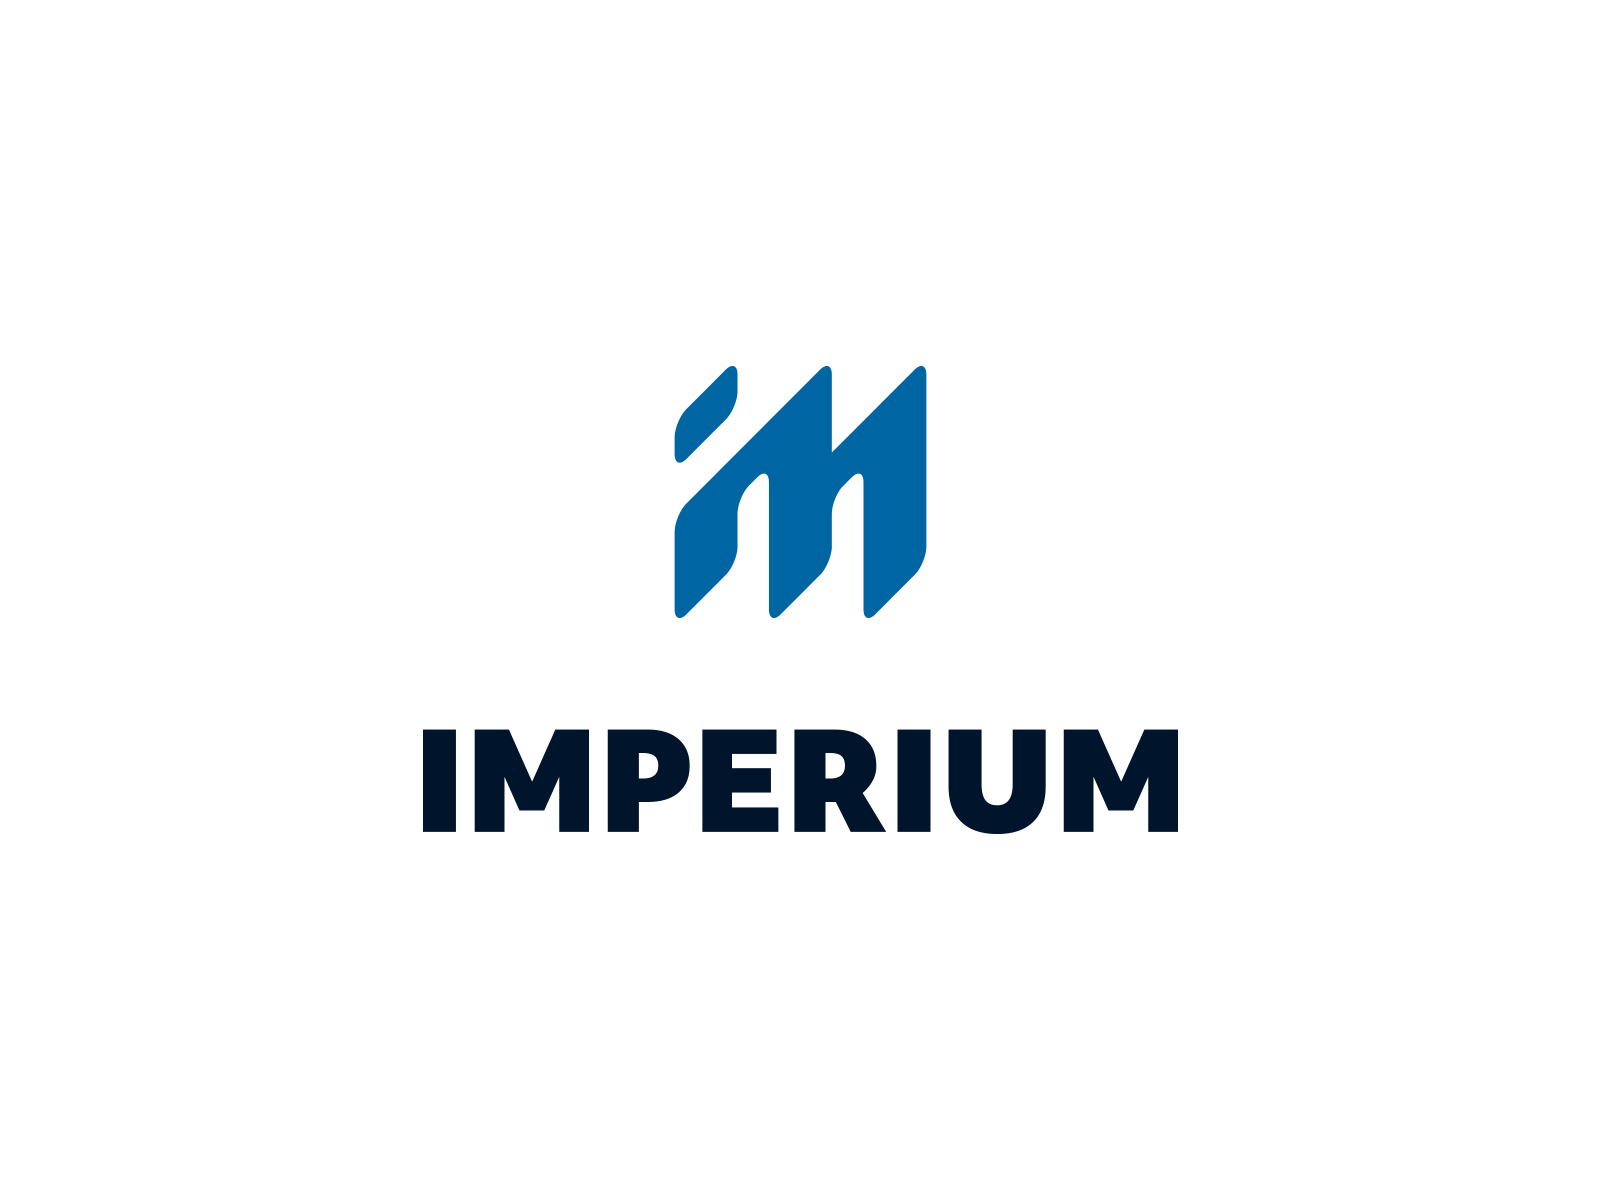 Imperium brand branding clean design identity imperium logo minimalist monogram visual